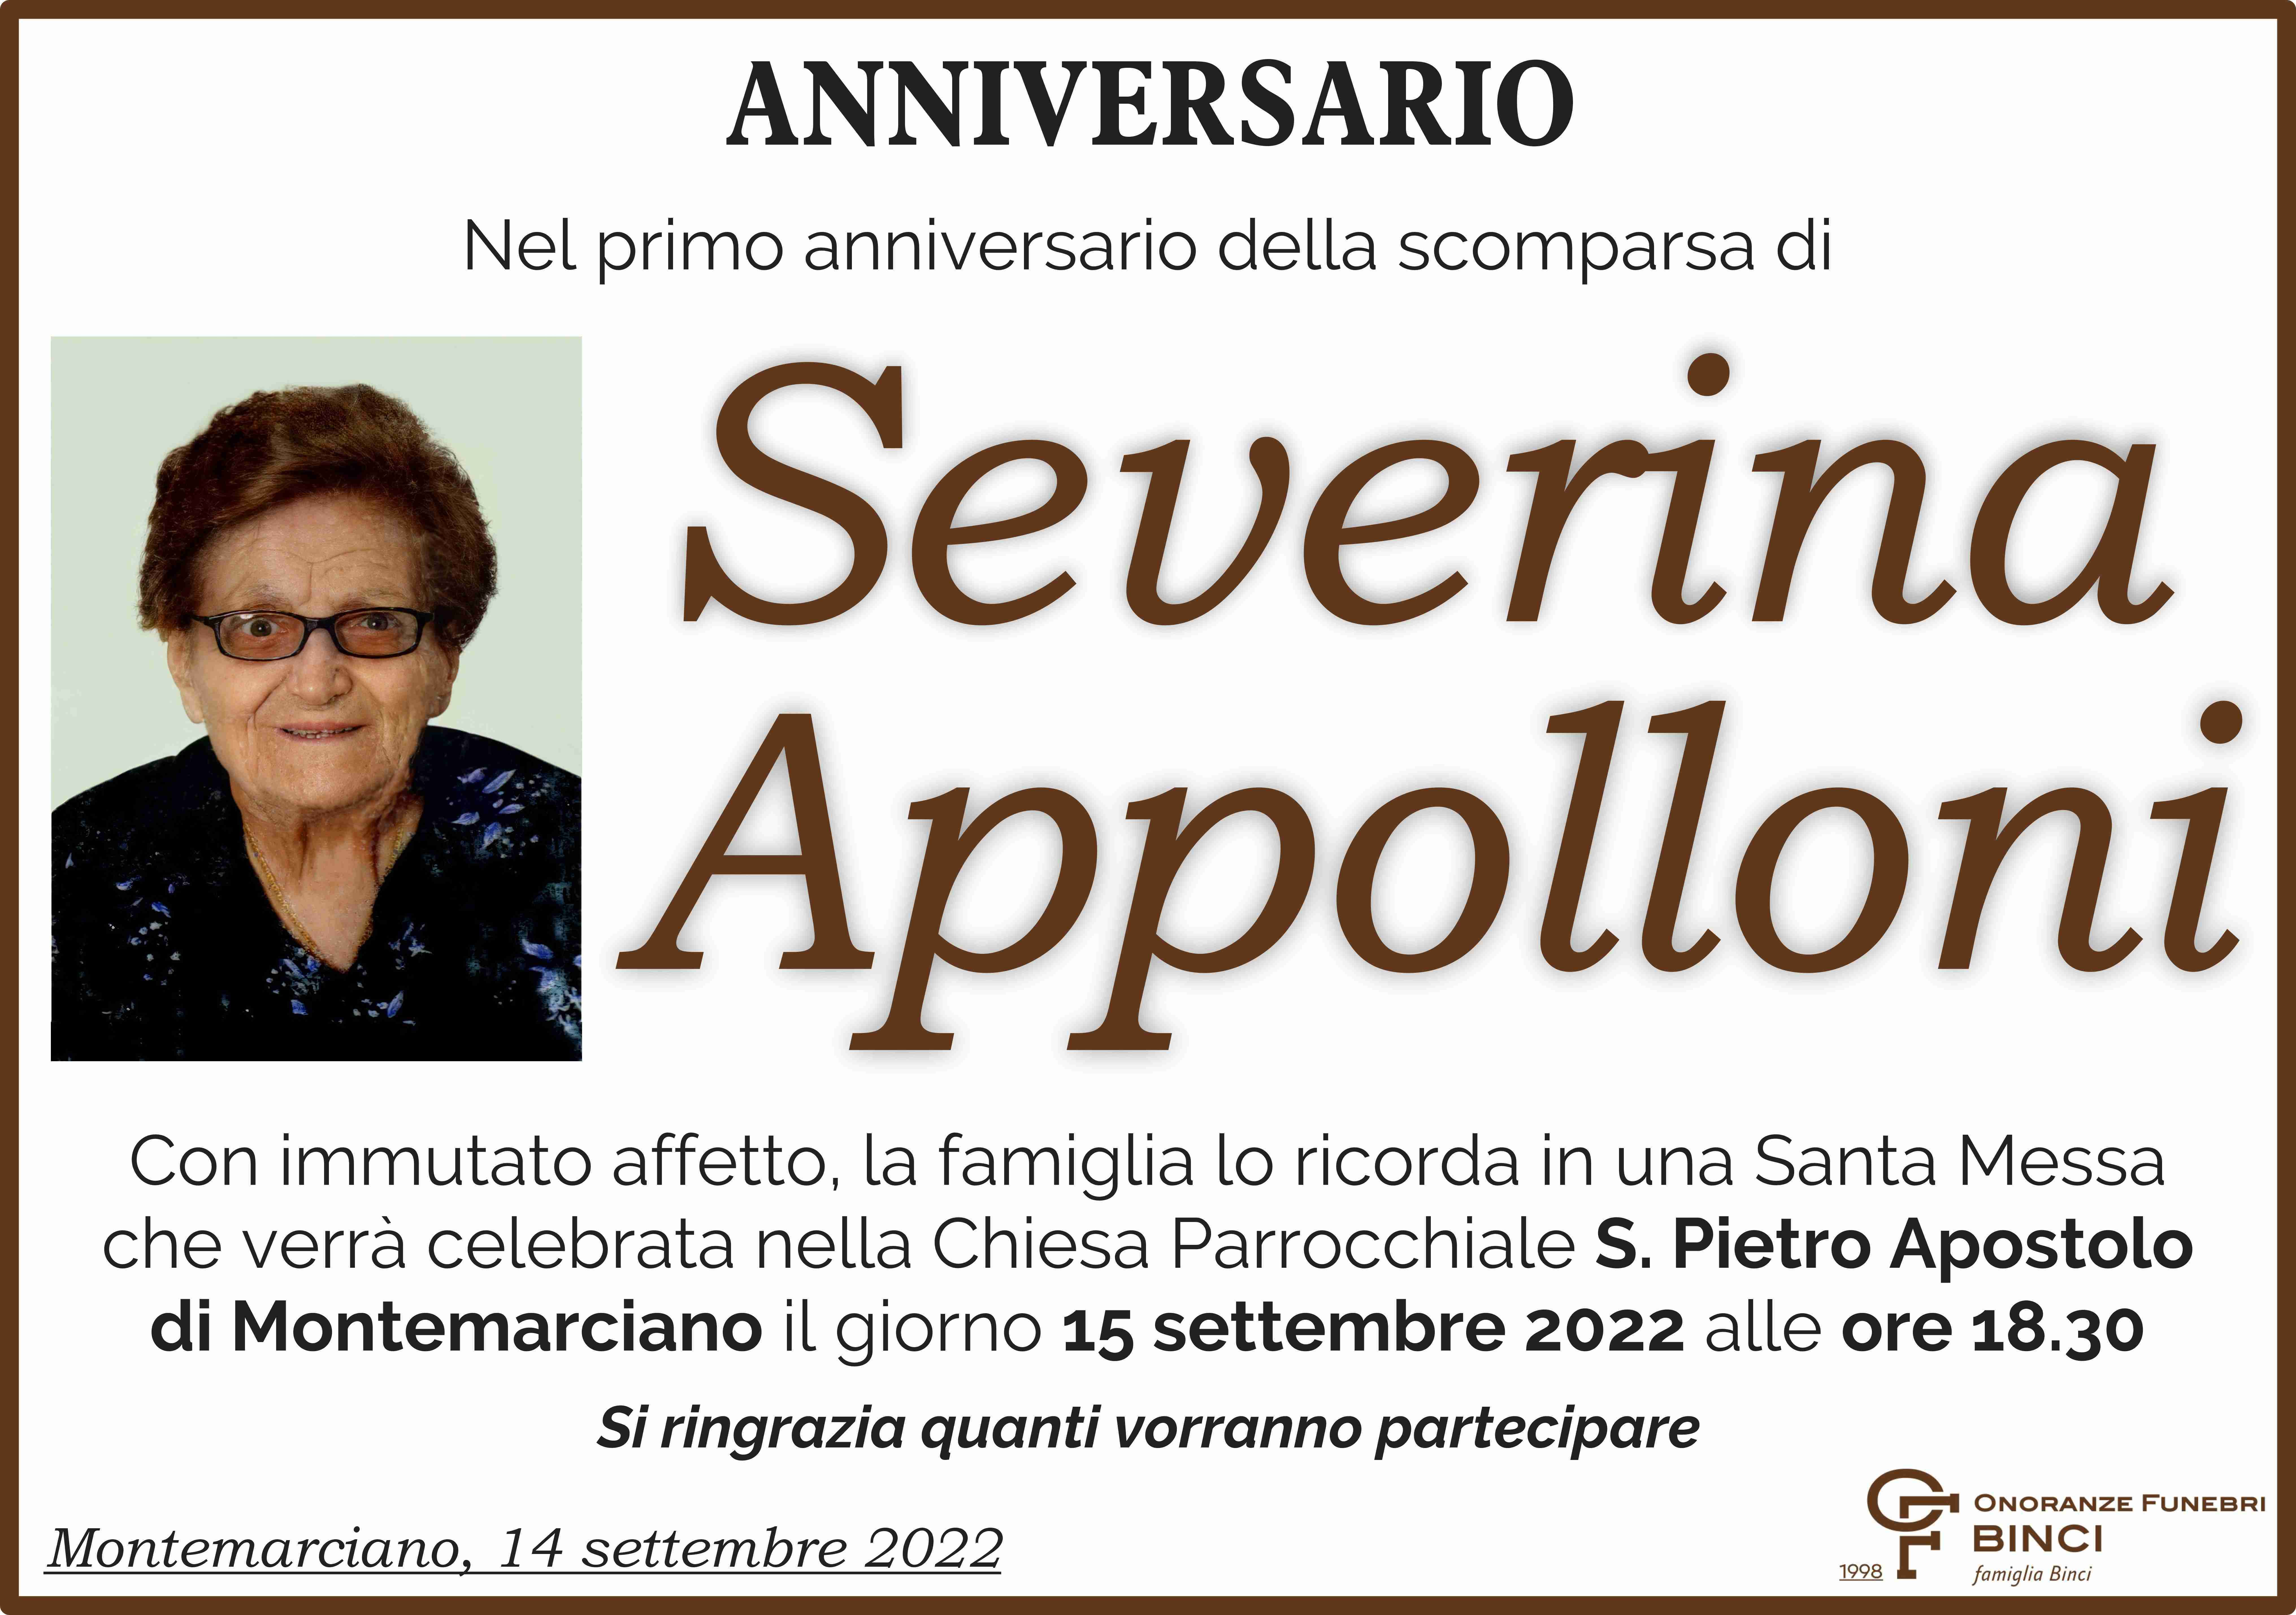 Severina Appolloni